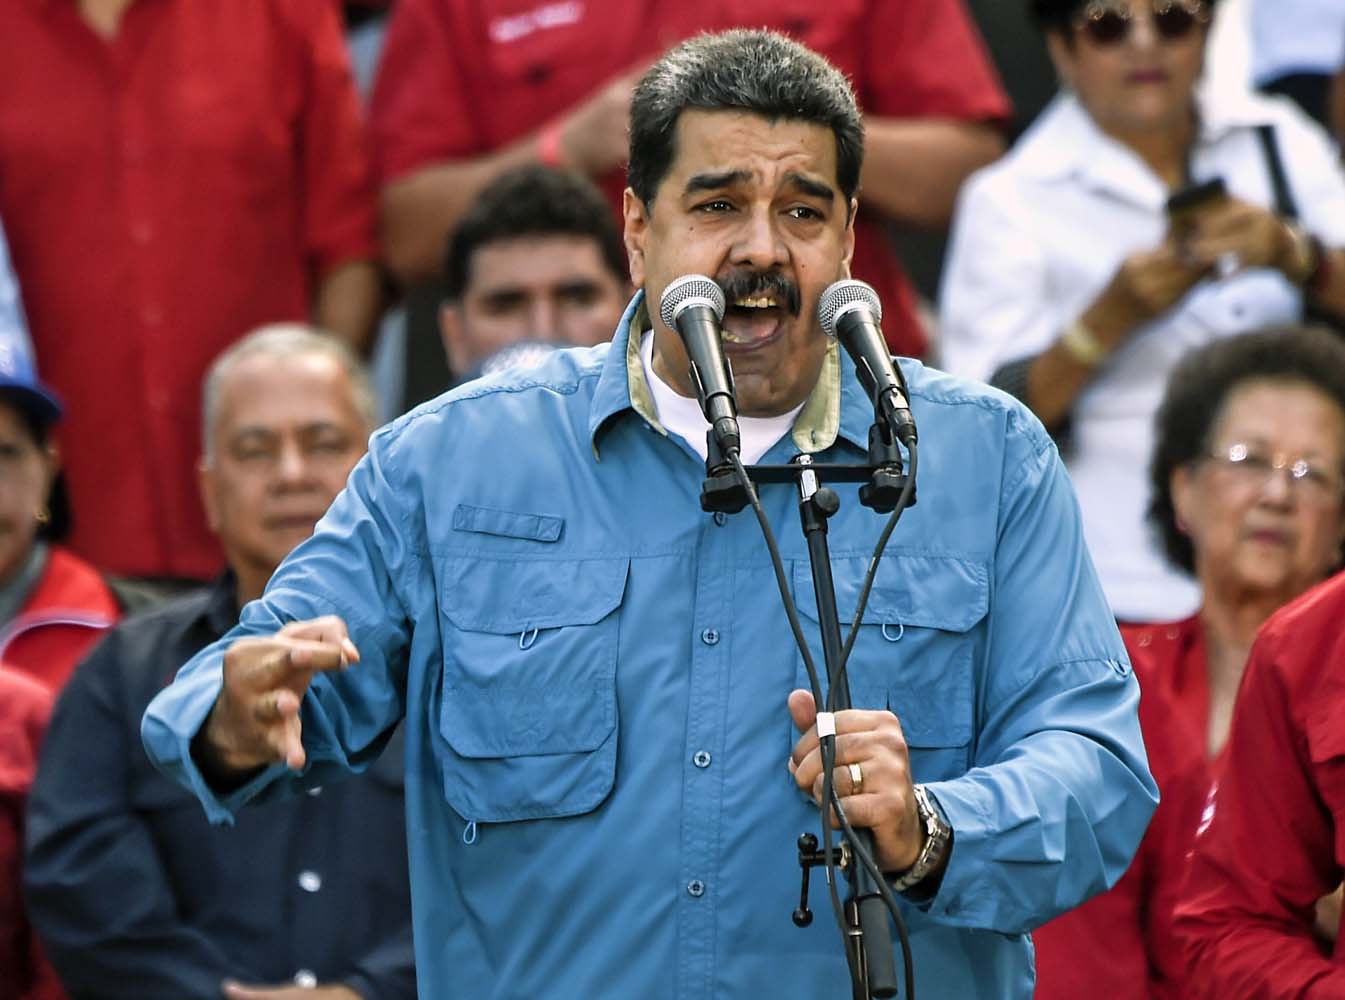 ¡Ay le dolió! Maduro dice que Rex Tillerson ofendió “la dignidad” de los militares venezolanos